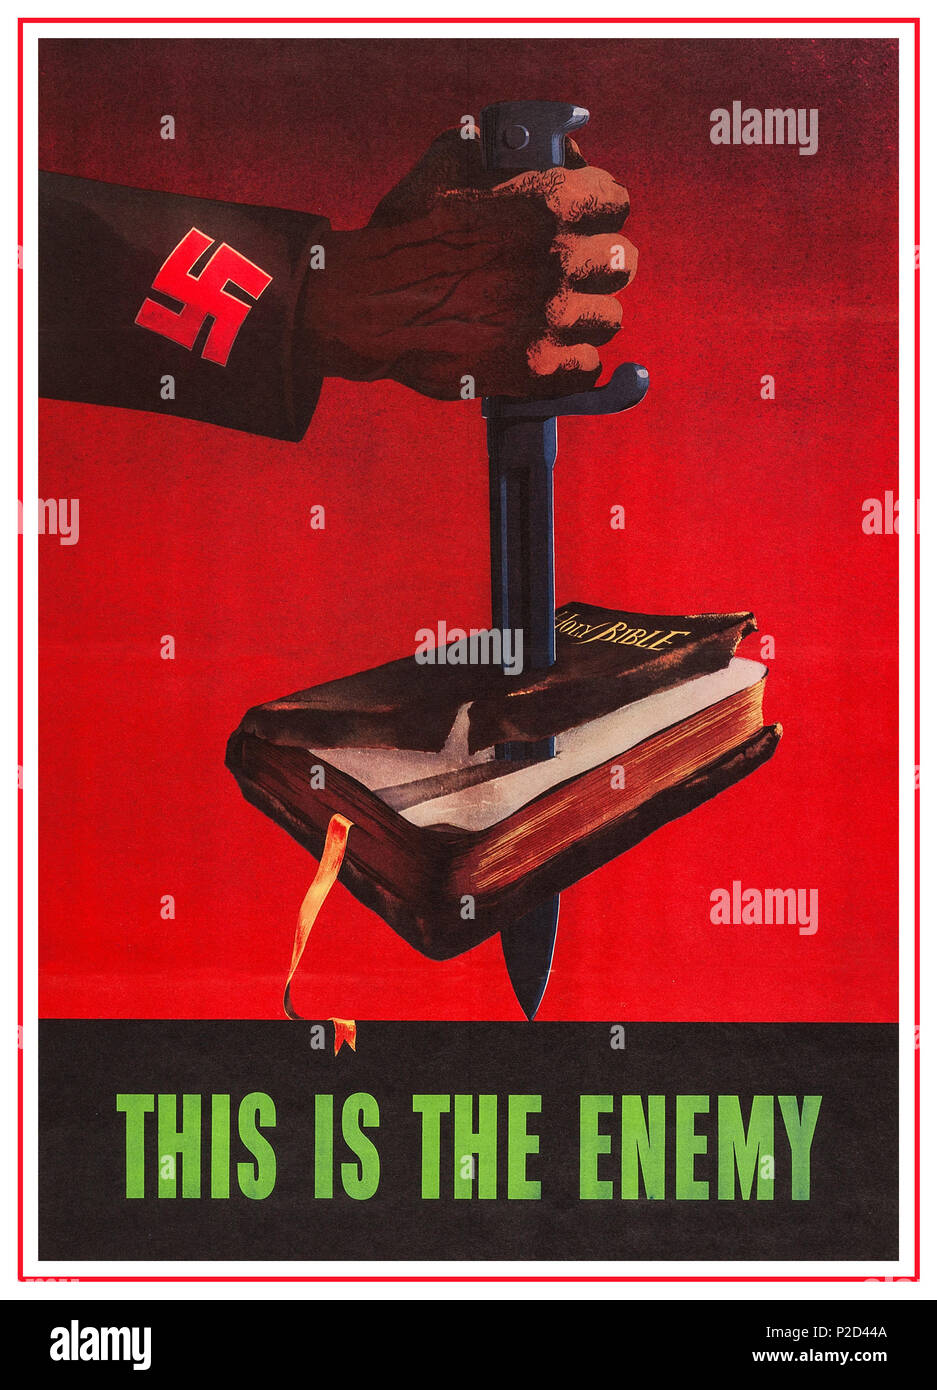 Un droitard vient me dire qu'Hitler était chrétien. 1940-ww2-vintage-usa-affiche-de-propagande-anti-nazi-c-est-l-ennemi-etats-unis-d-amerique-office-de-l-information-guerre-1943-bible-a-coups-de-poignard-par-arm-avec-croix-gammee-sur-la-manche-affiches-de-guerre-nazis-christianisme-bible-u-s-a-1943-world-war-2-p2d44a